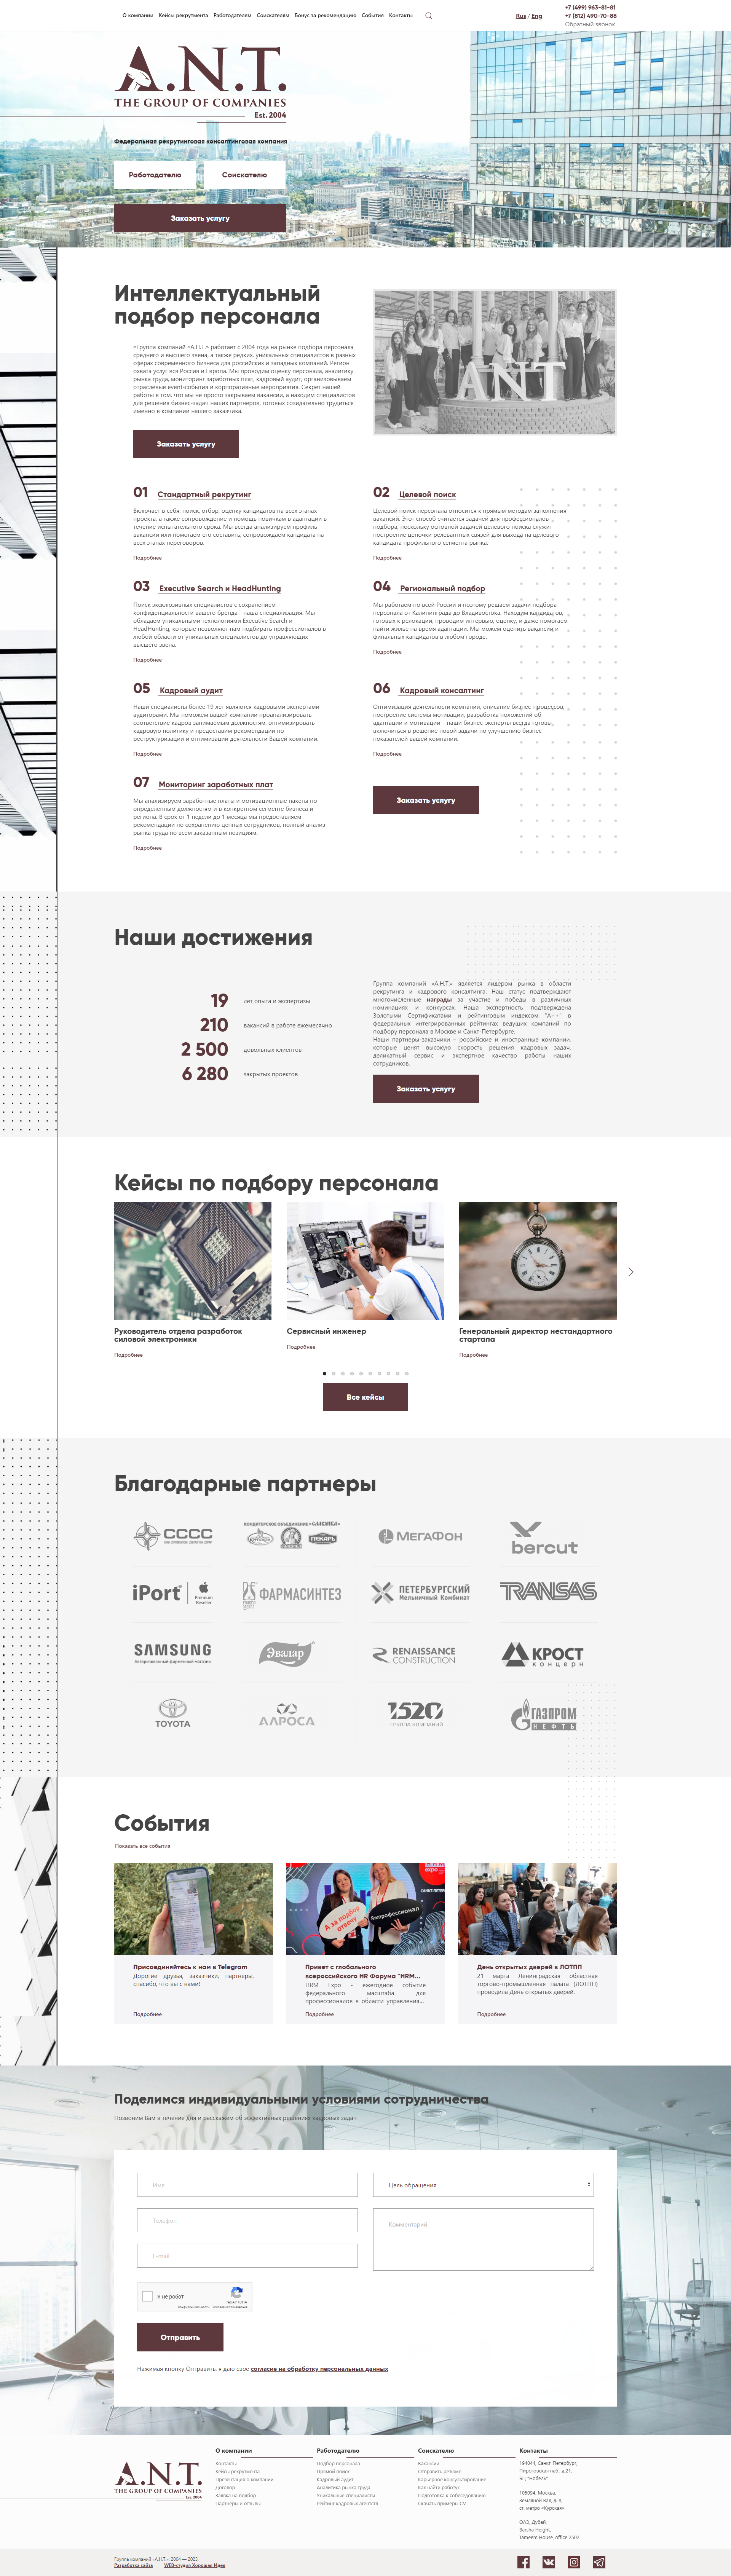 Пример antgrup.ru сайта из рекламной выдачи